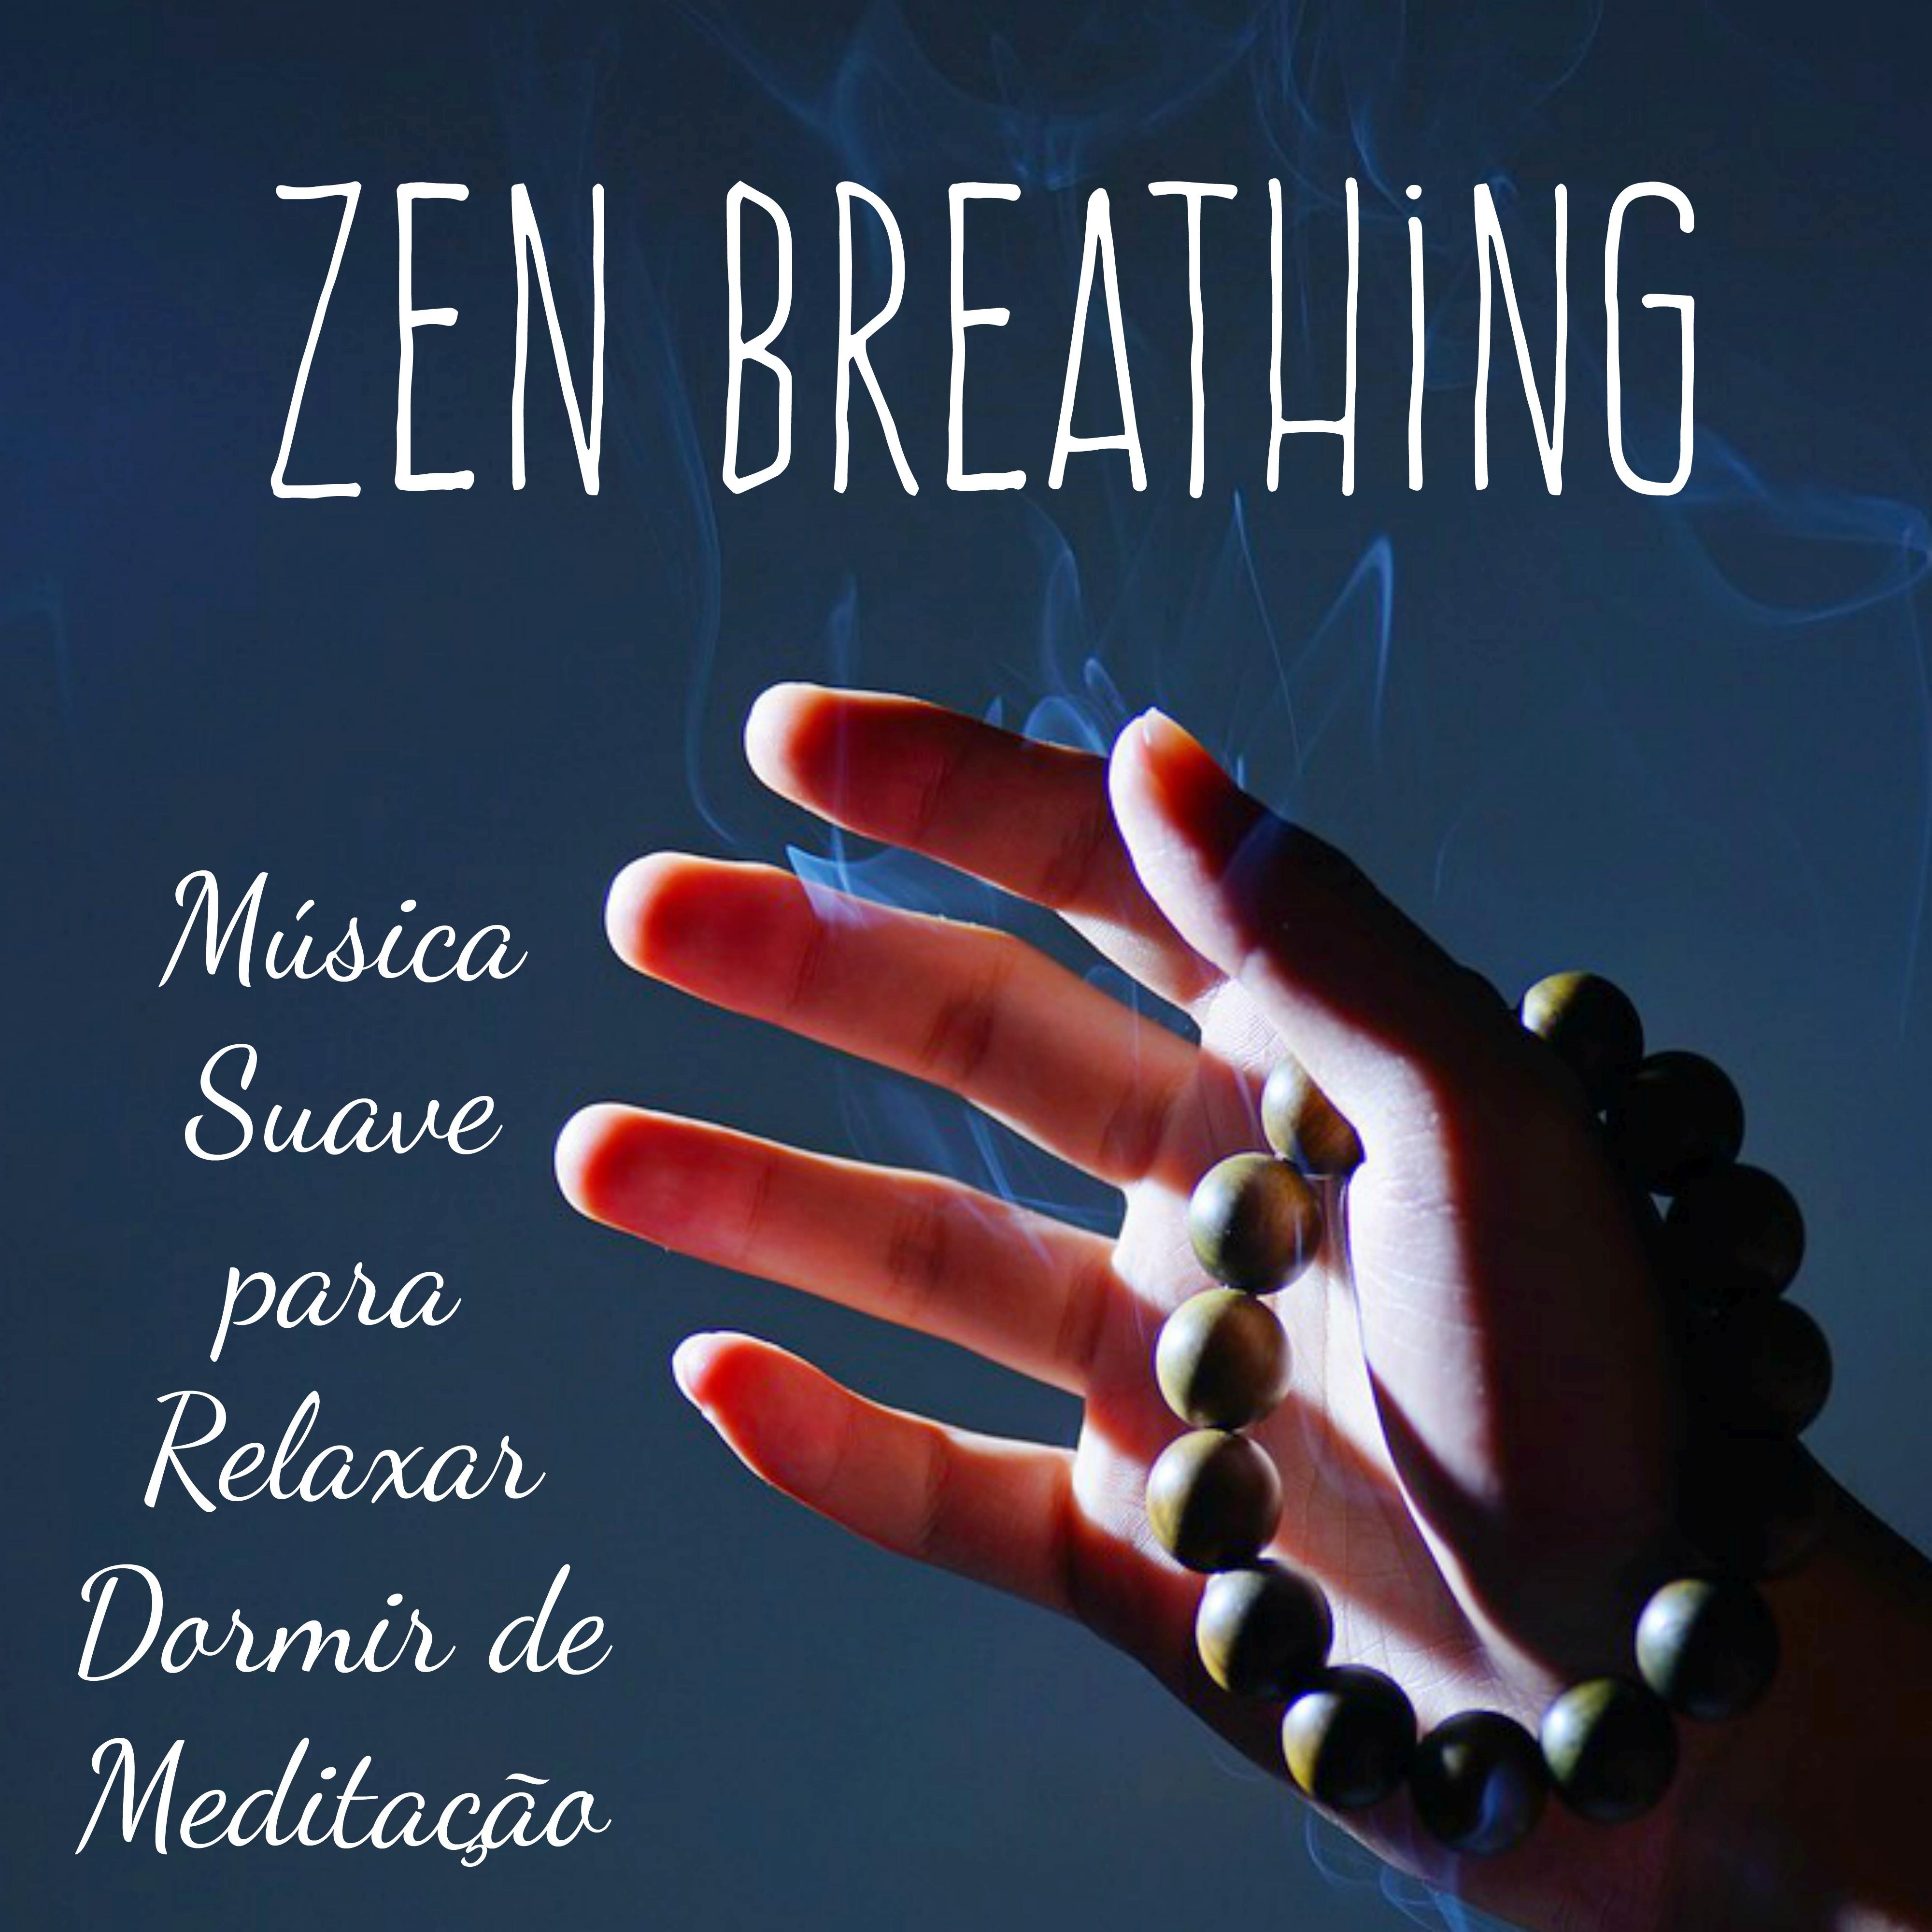 Zen Breathing  Mu sica Suave para Relaxar Dormir de Medita o com Sons Instrumentais Naturais Bem Estar